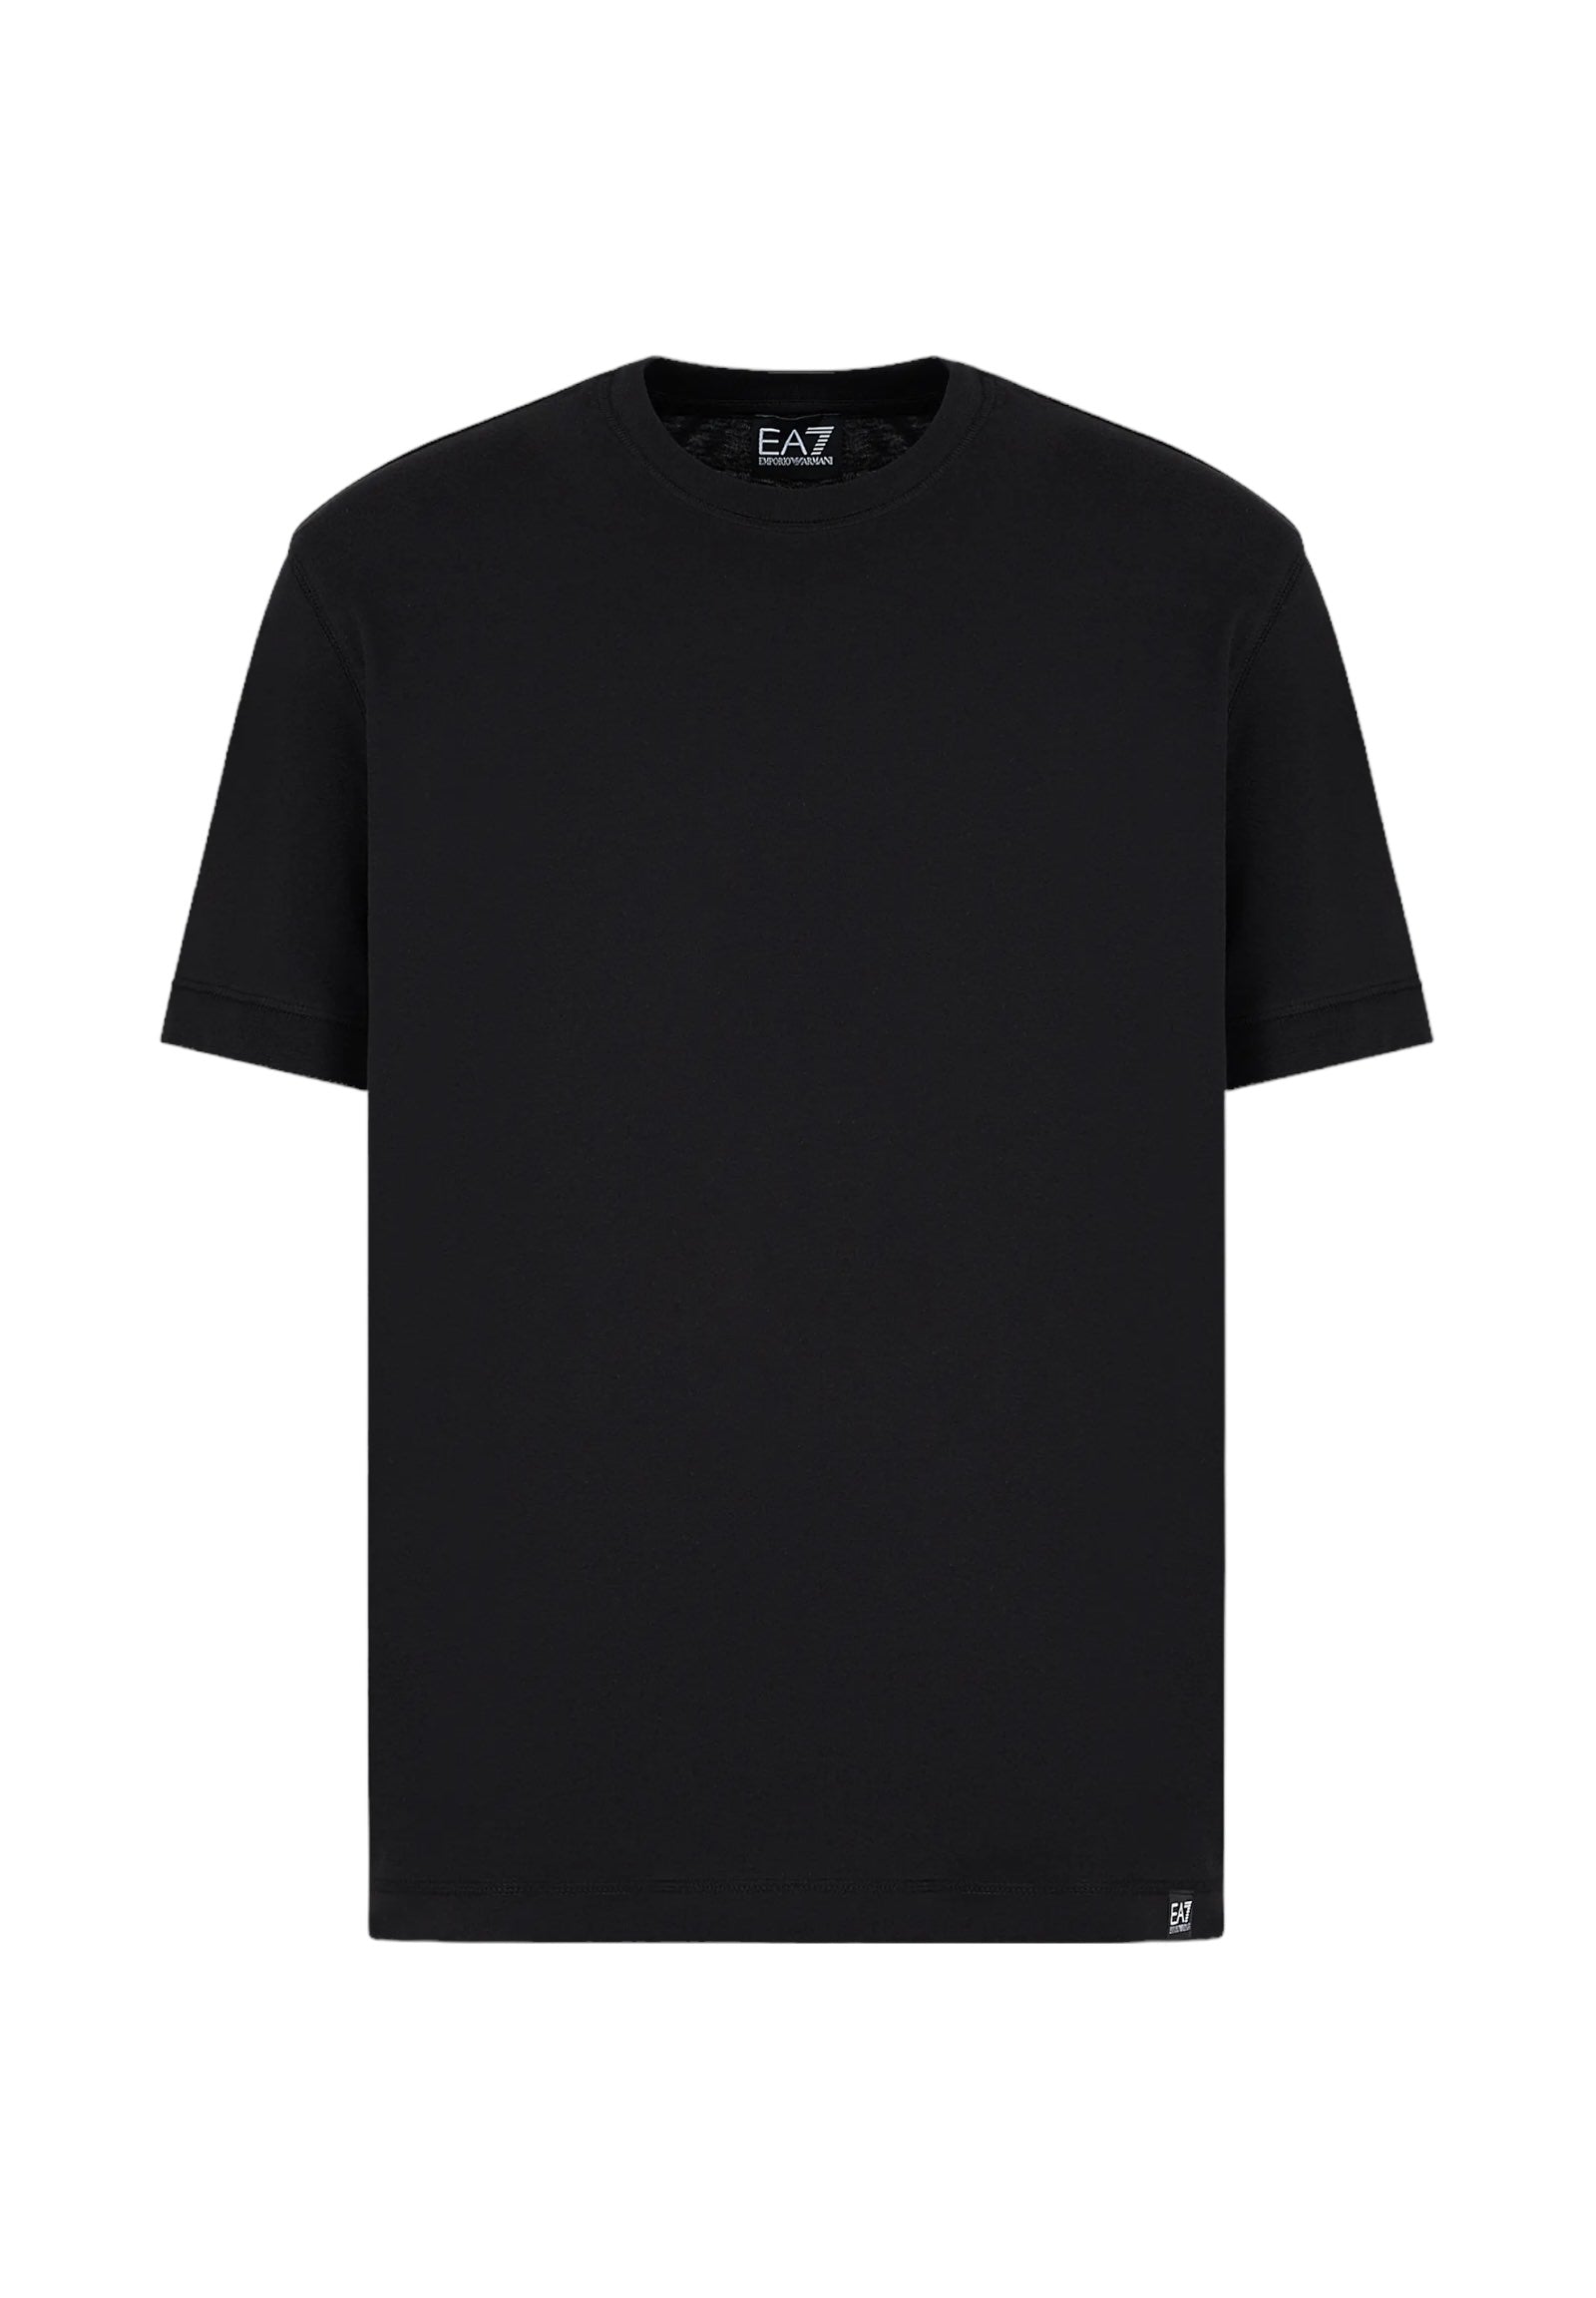 3dut02 Black T-Shirt